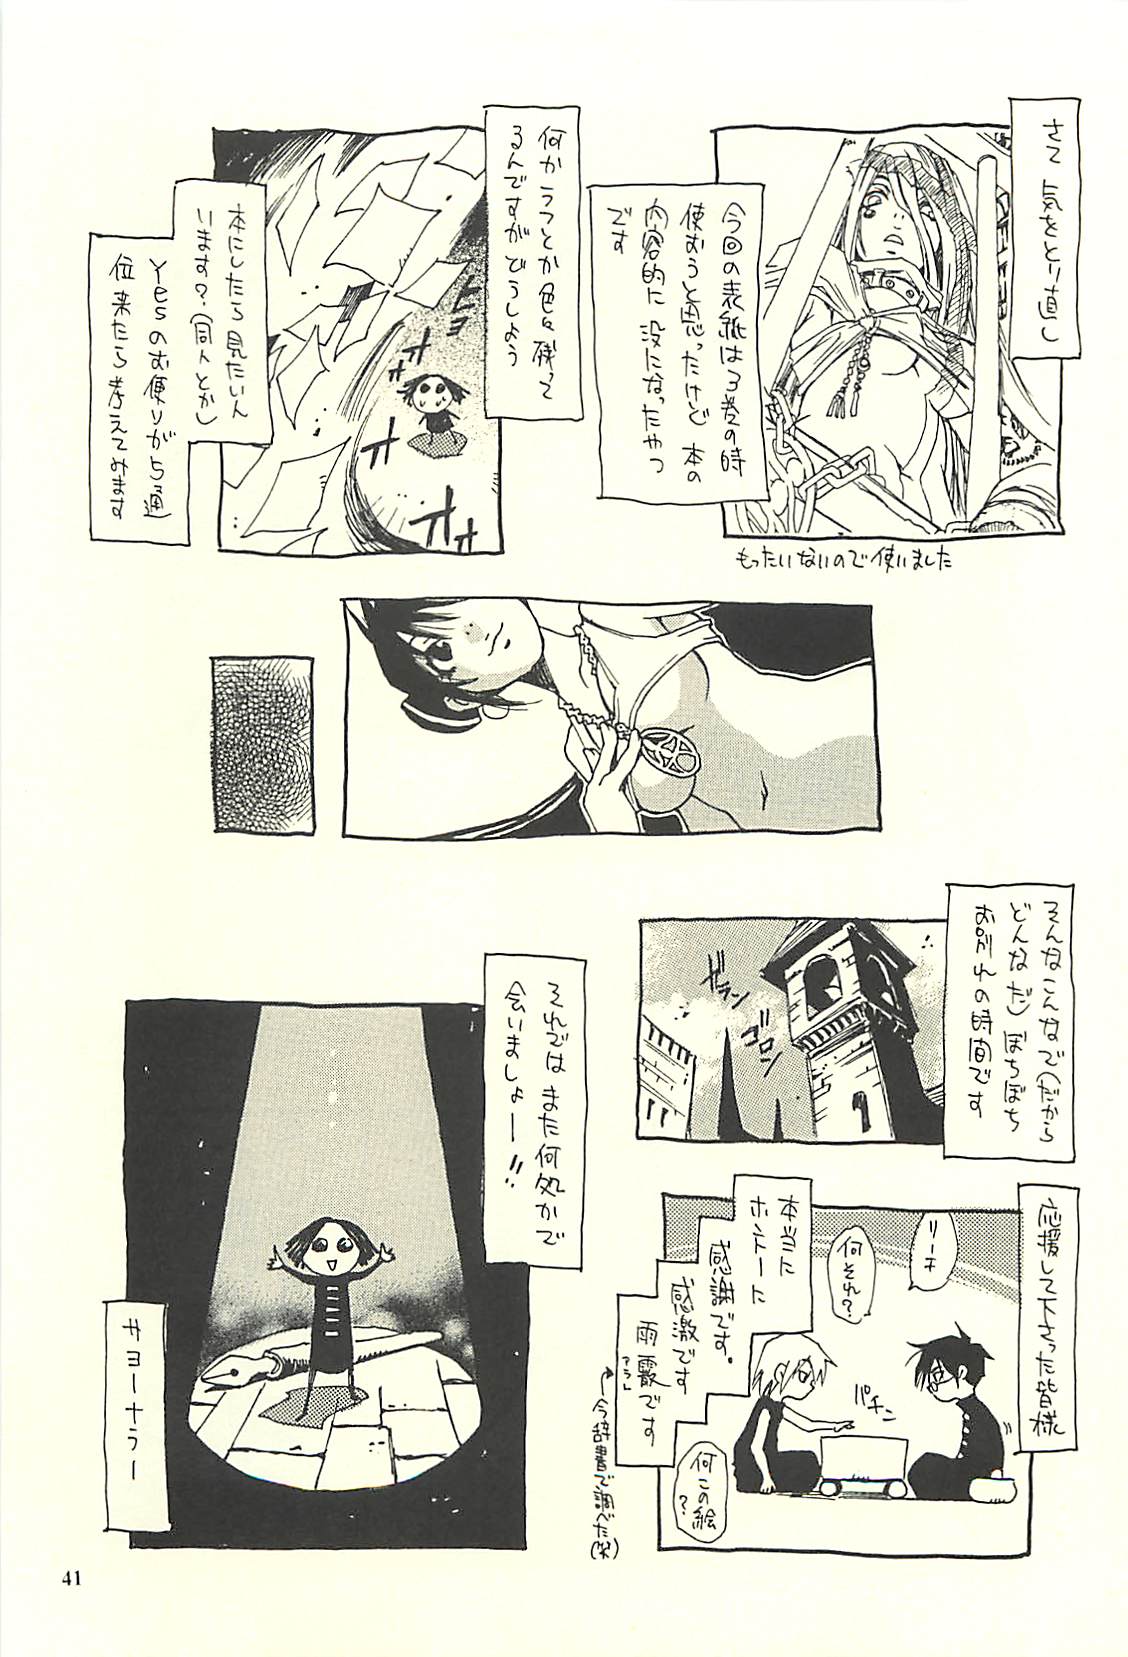 [NOUZUI MAJUTSU, NO-NO'S (Kawara Keisuke, Kanesada Keishi)] Nouzui Kawaraban Hinichijoutekina Nichijou II [脳髄魔術, NO-NO'S (瓦敬助, 兼処敬士)] 脳髄瓦版 非日常的な日常II